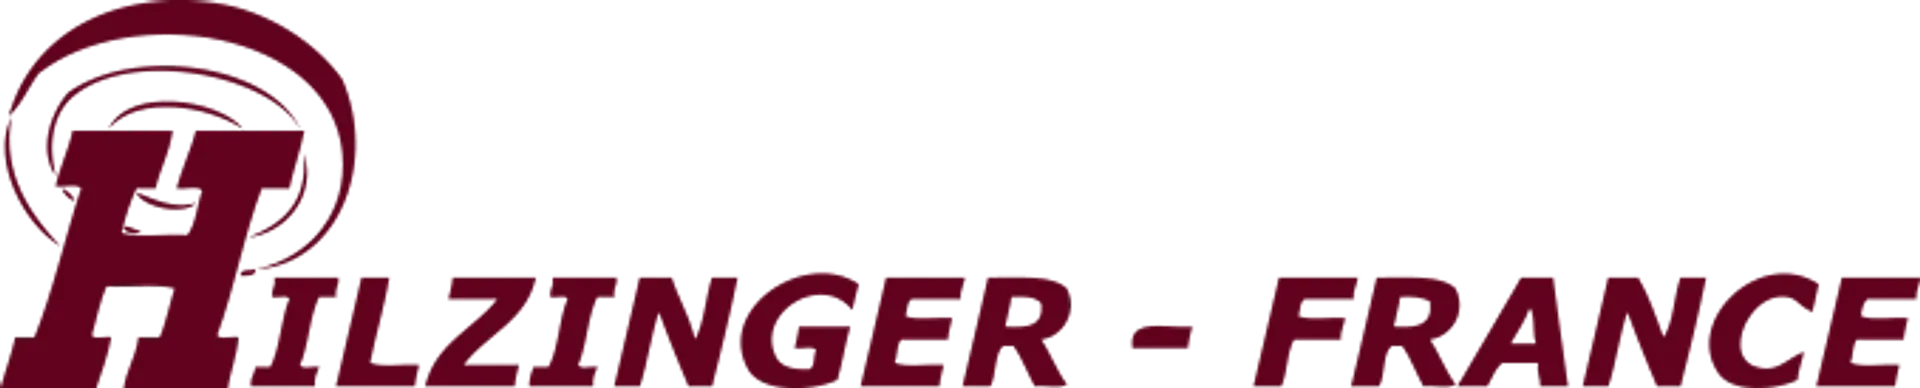 HILZINGER logo